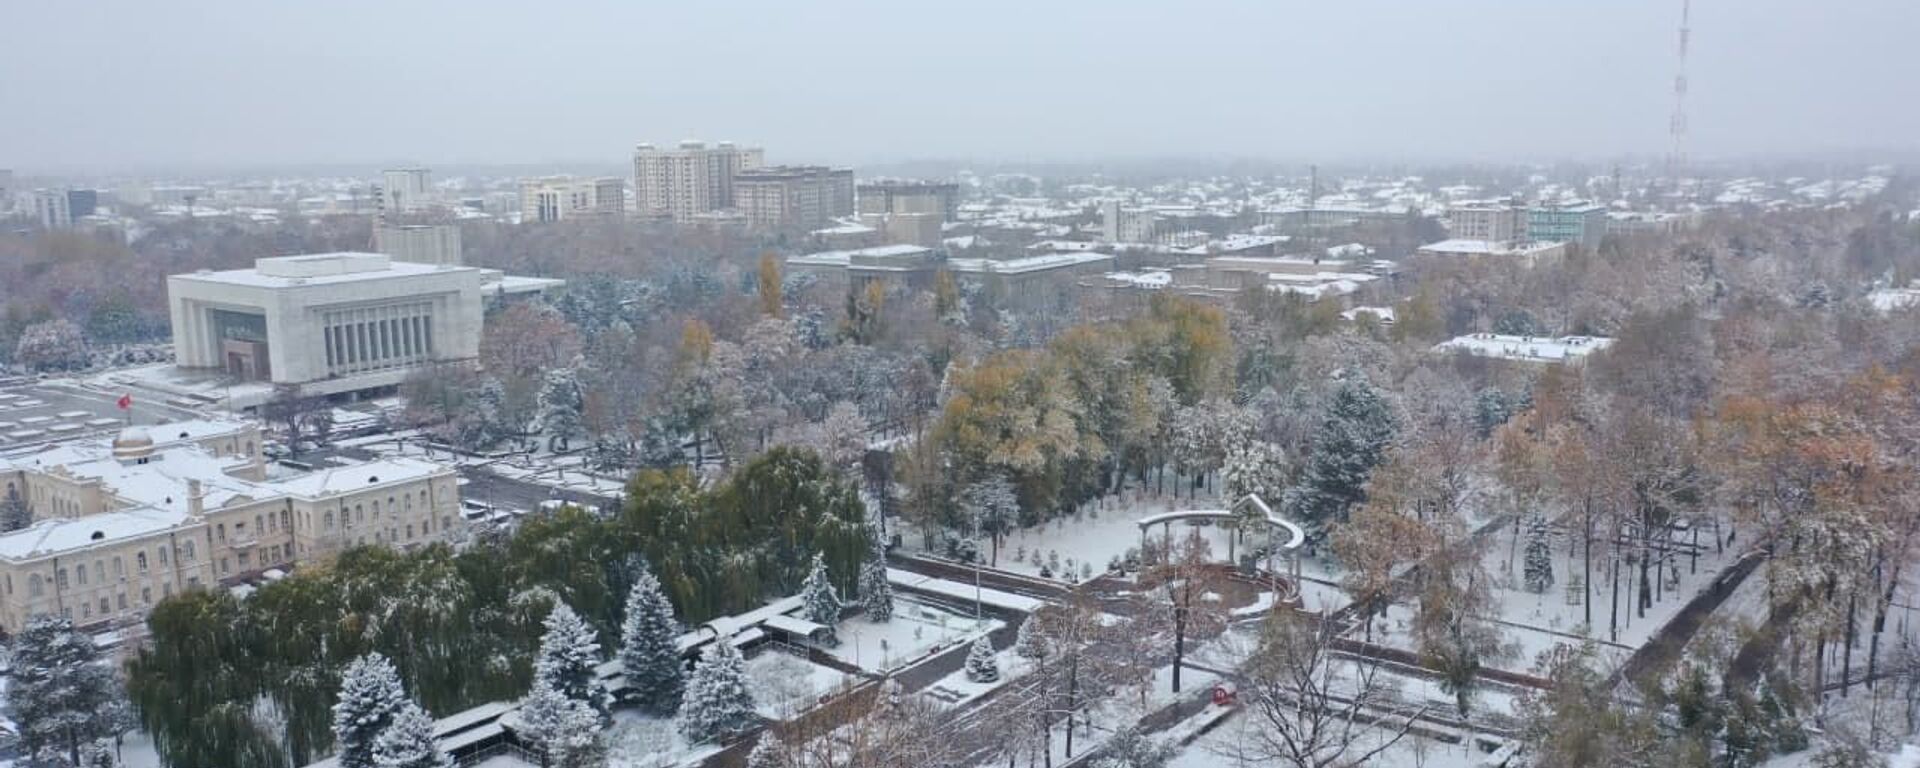 Осенний Бишкек под снежным одеялом — красивое видео с дрона - Sputnik Кыргызстан, 1920, 04.11.2021